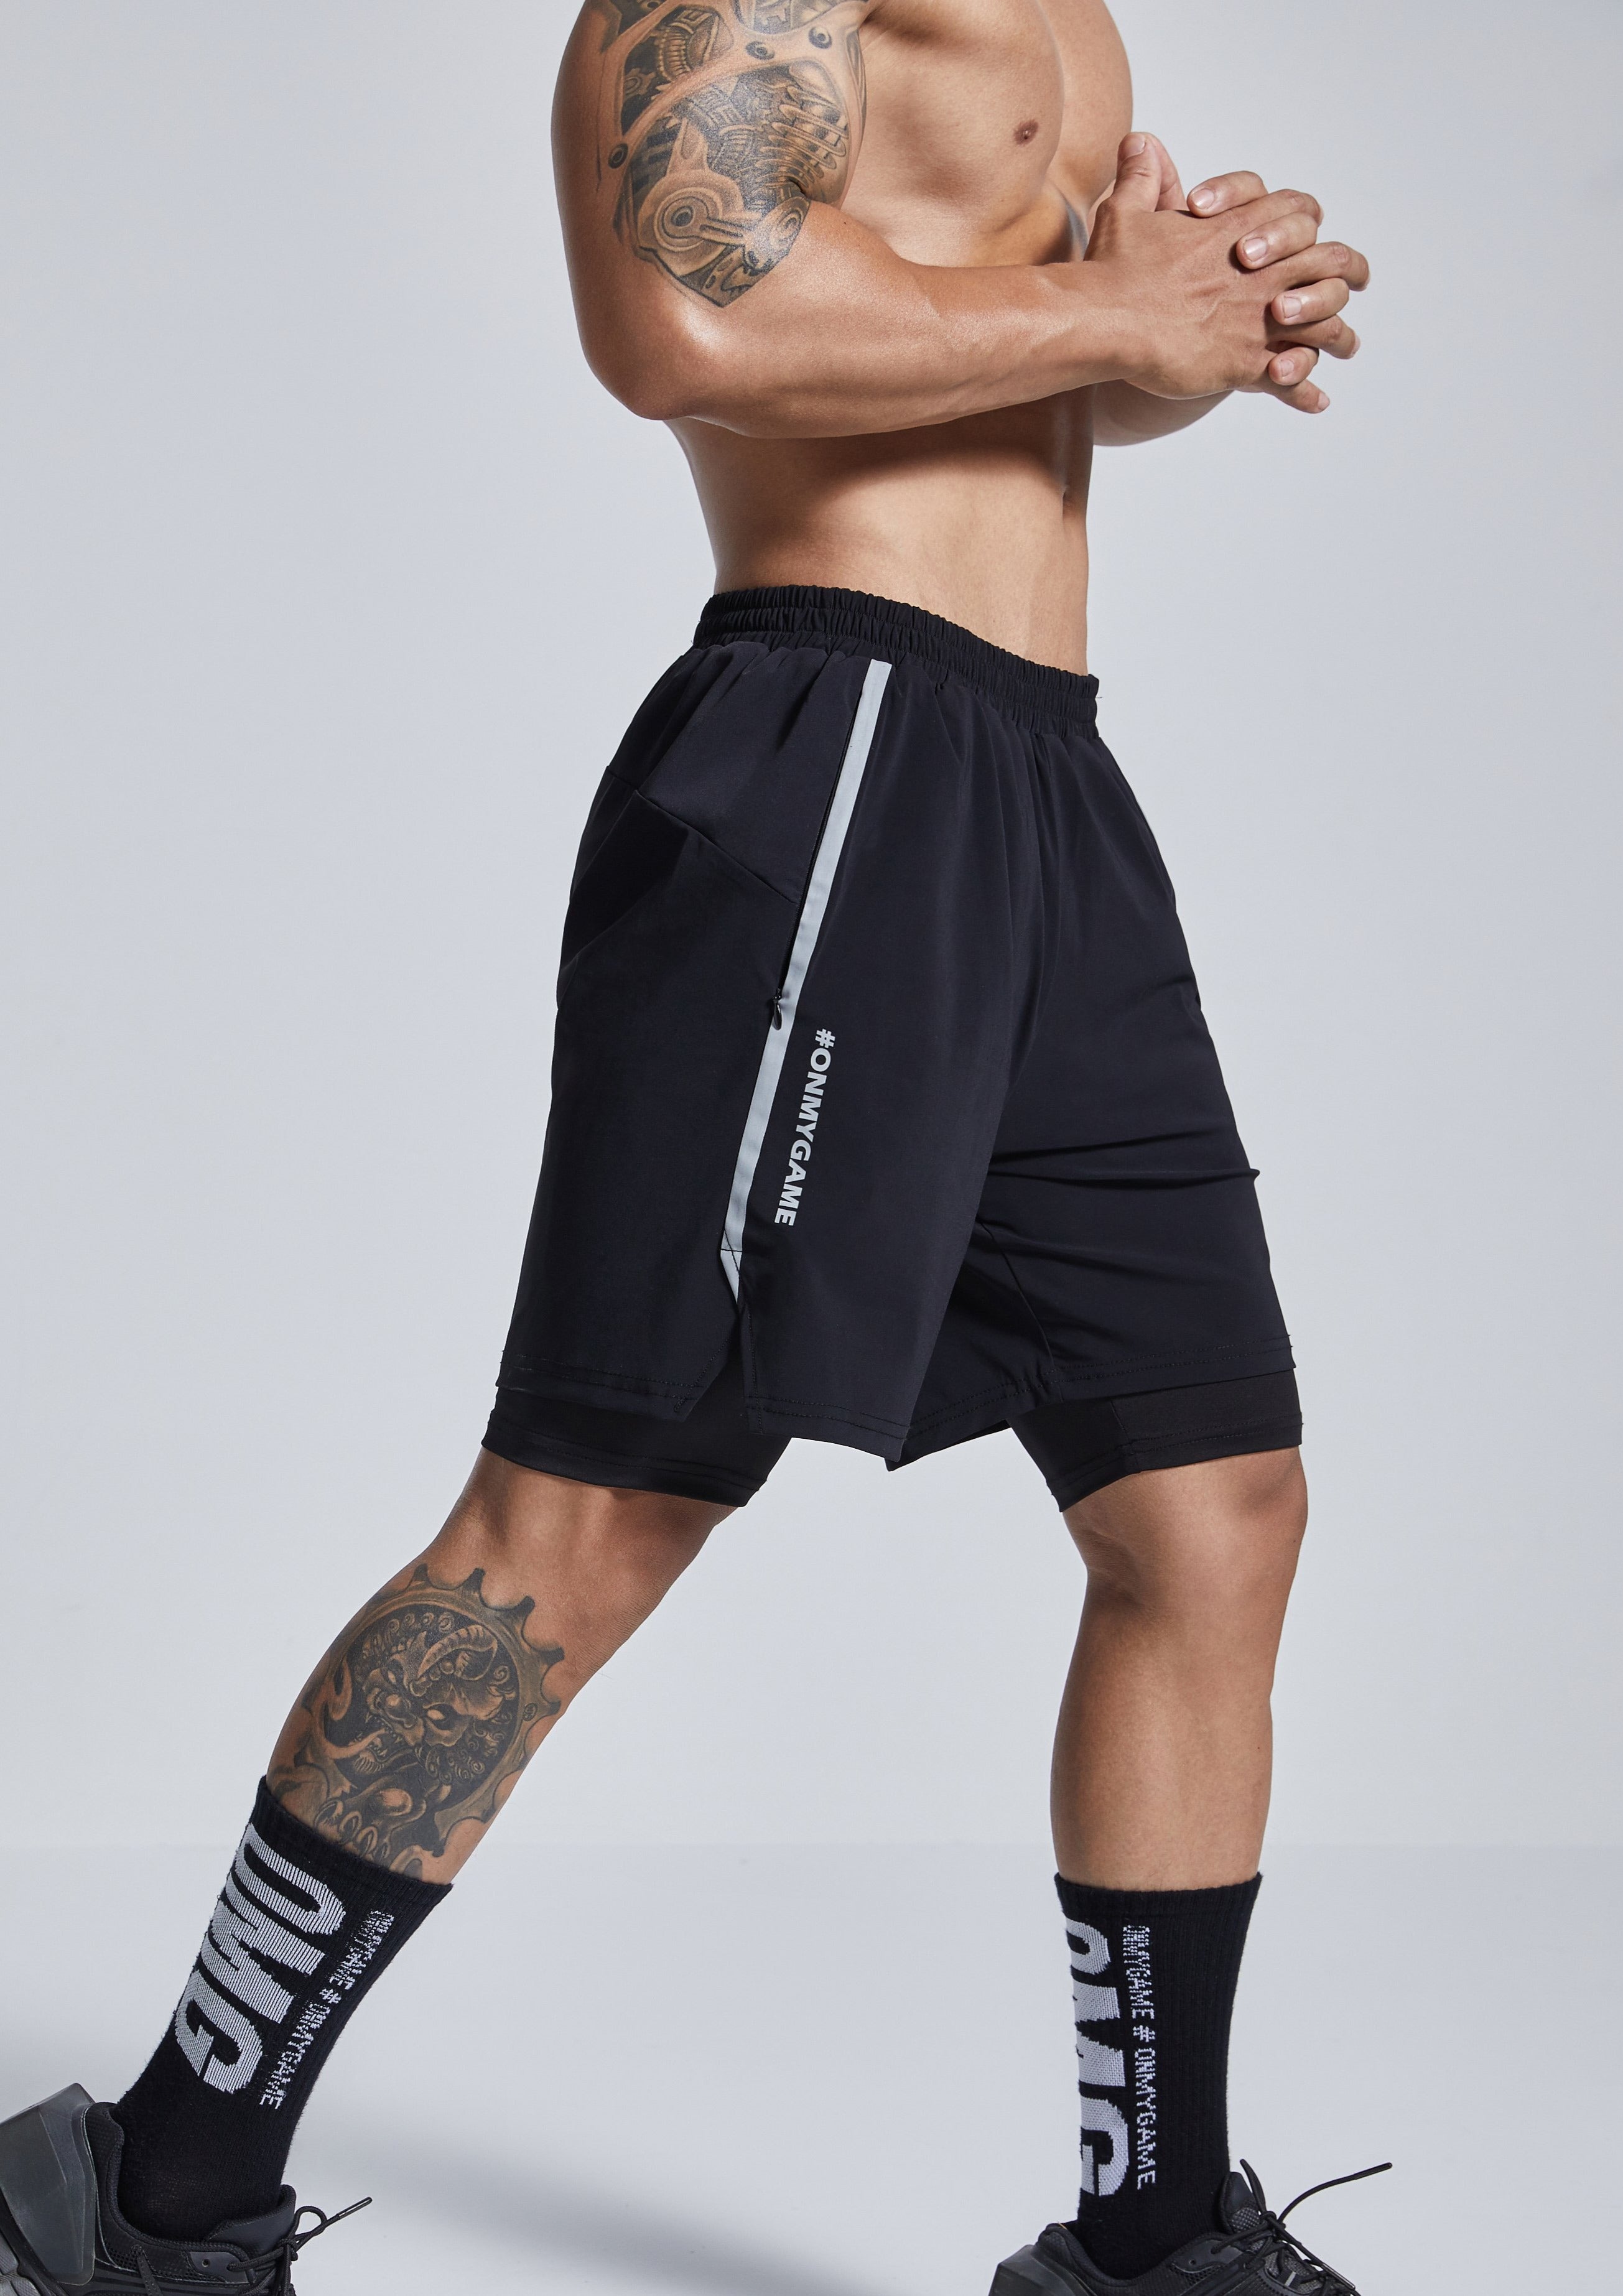 OMG® Eclipse Gym Shorts